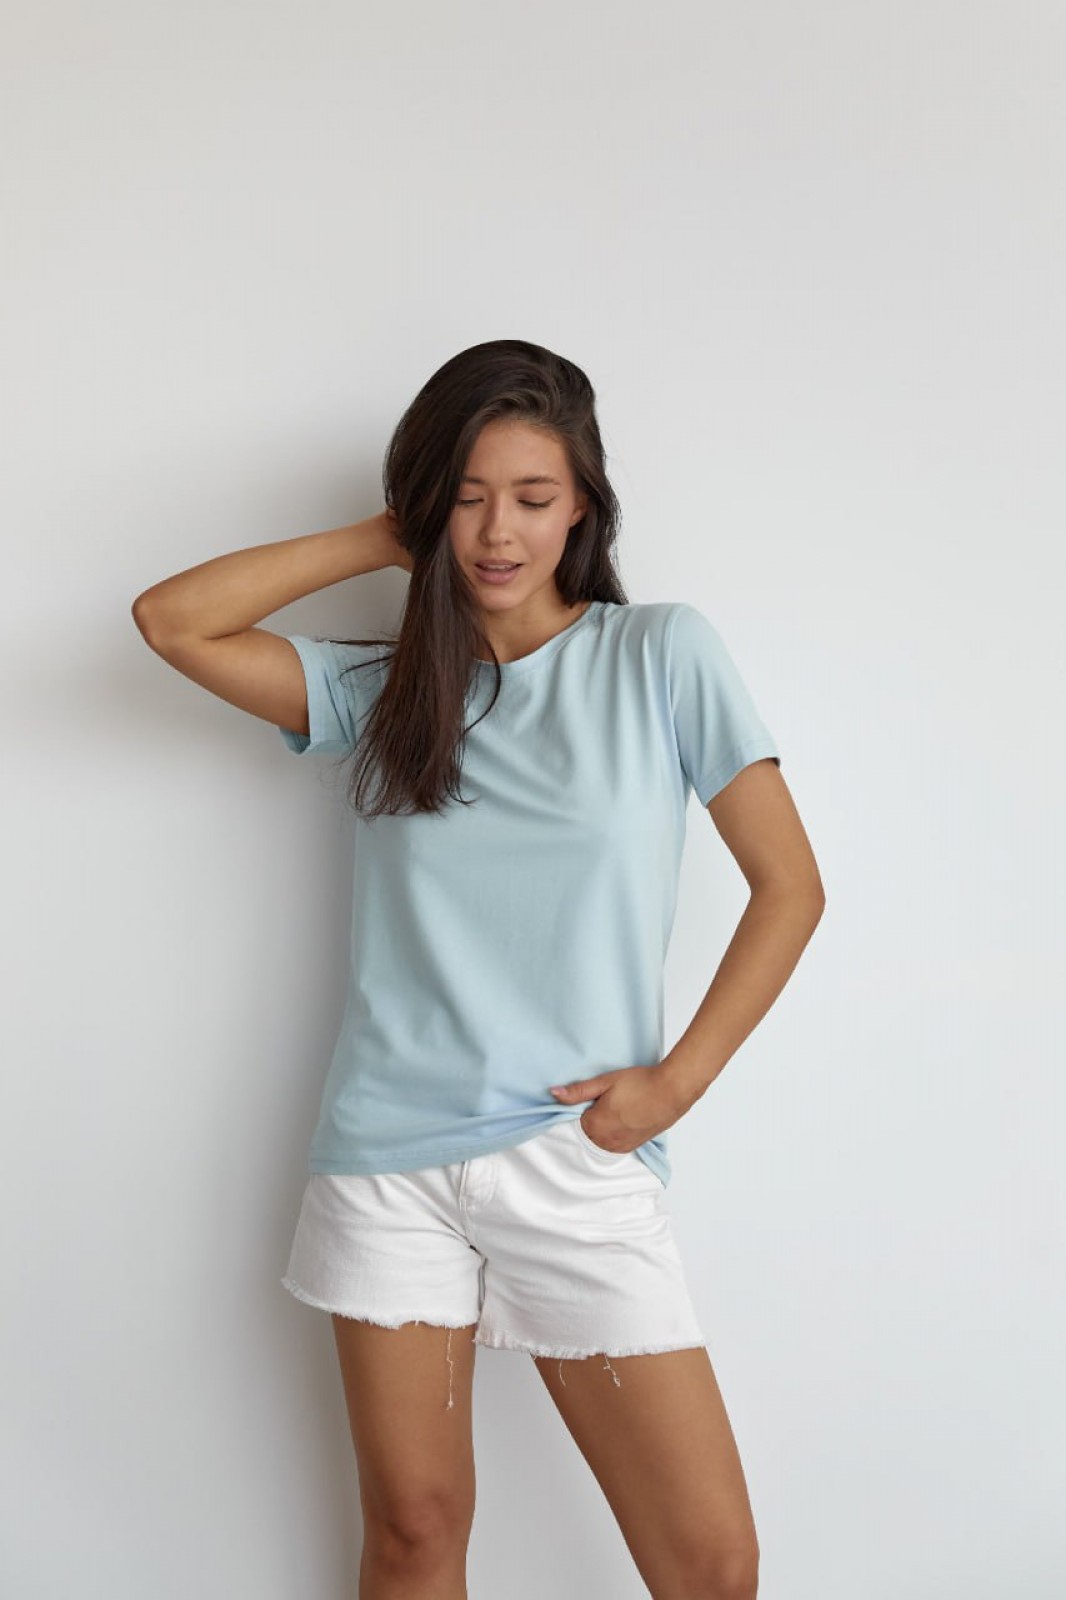 Жіноча базова футболка колір світло-блакитний р.XL 449920